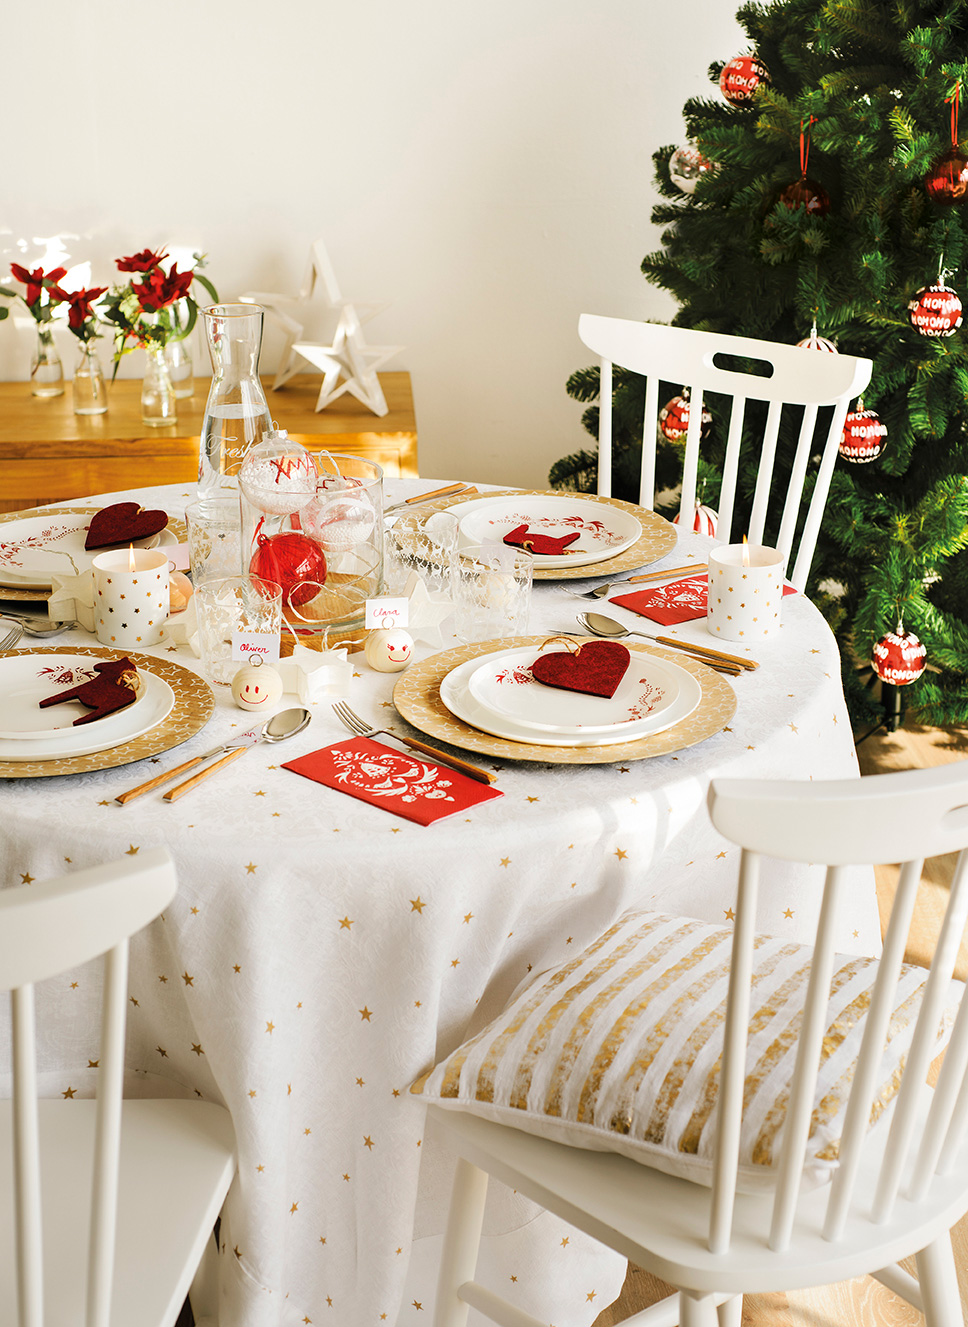 00444896. Mesa del comedor decorada en blanco, dorado y rojo junto al árbol de Navidad_00444896